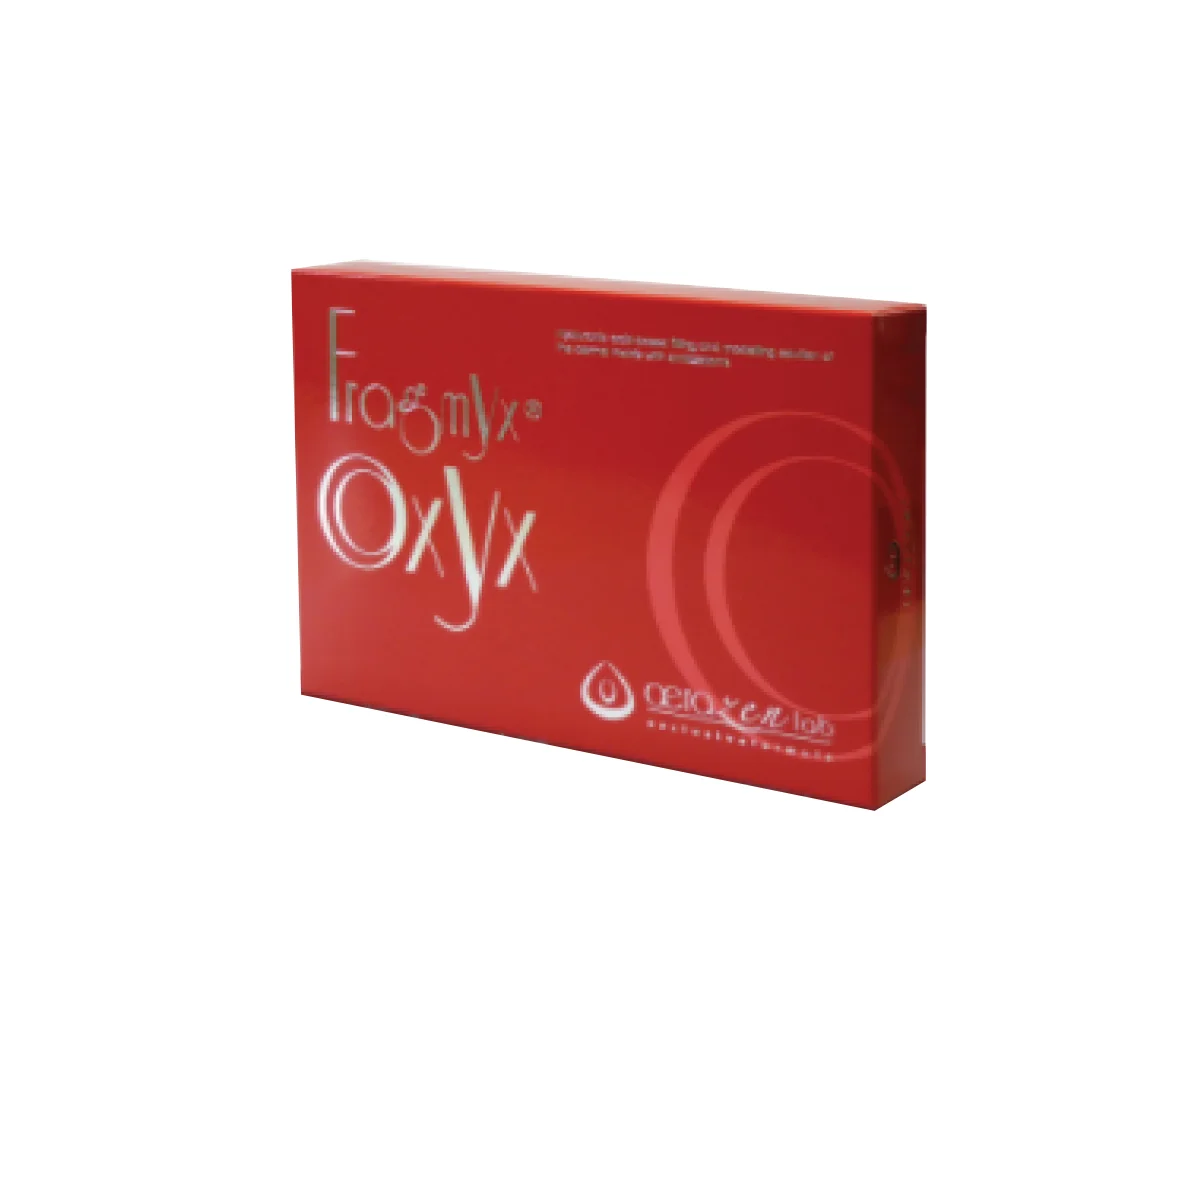 Fragmyx Oxyx - Huyết thanh làm sáng, tái tạo da và ngăn lão hóa